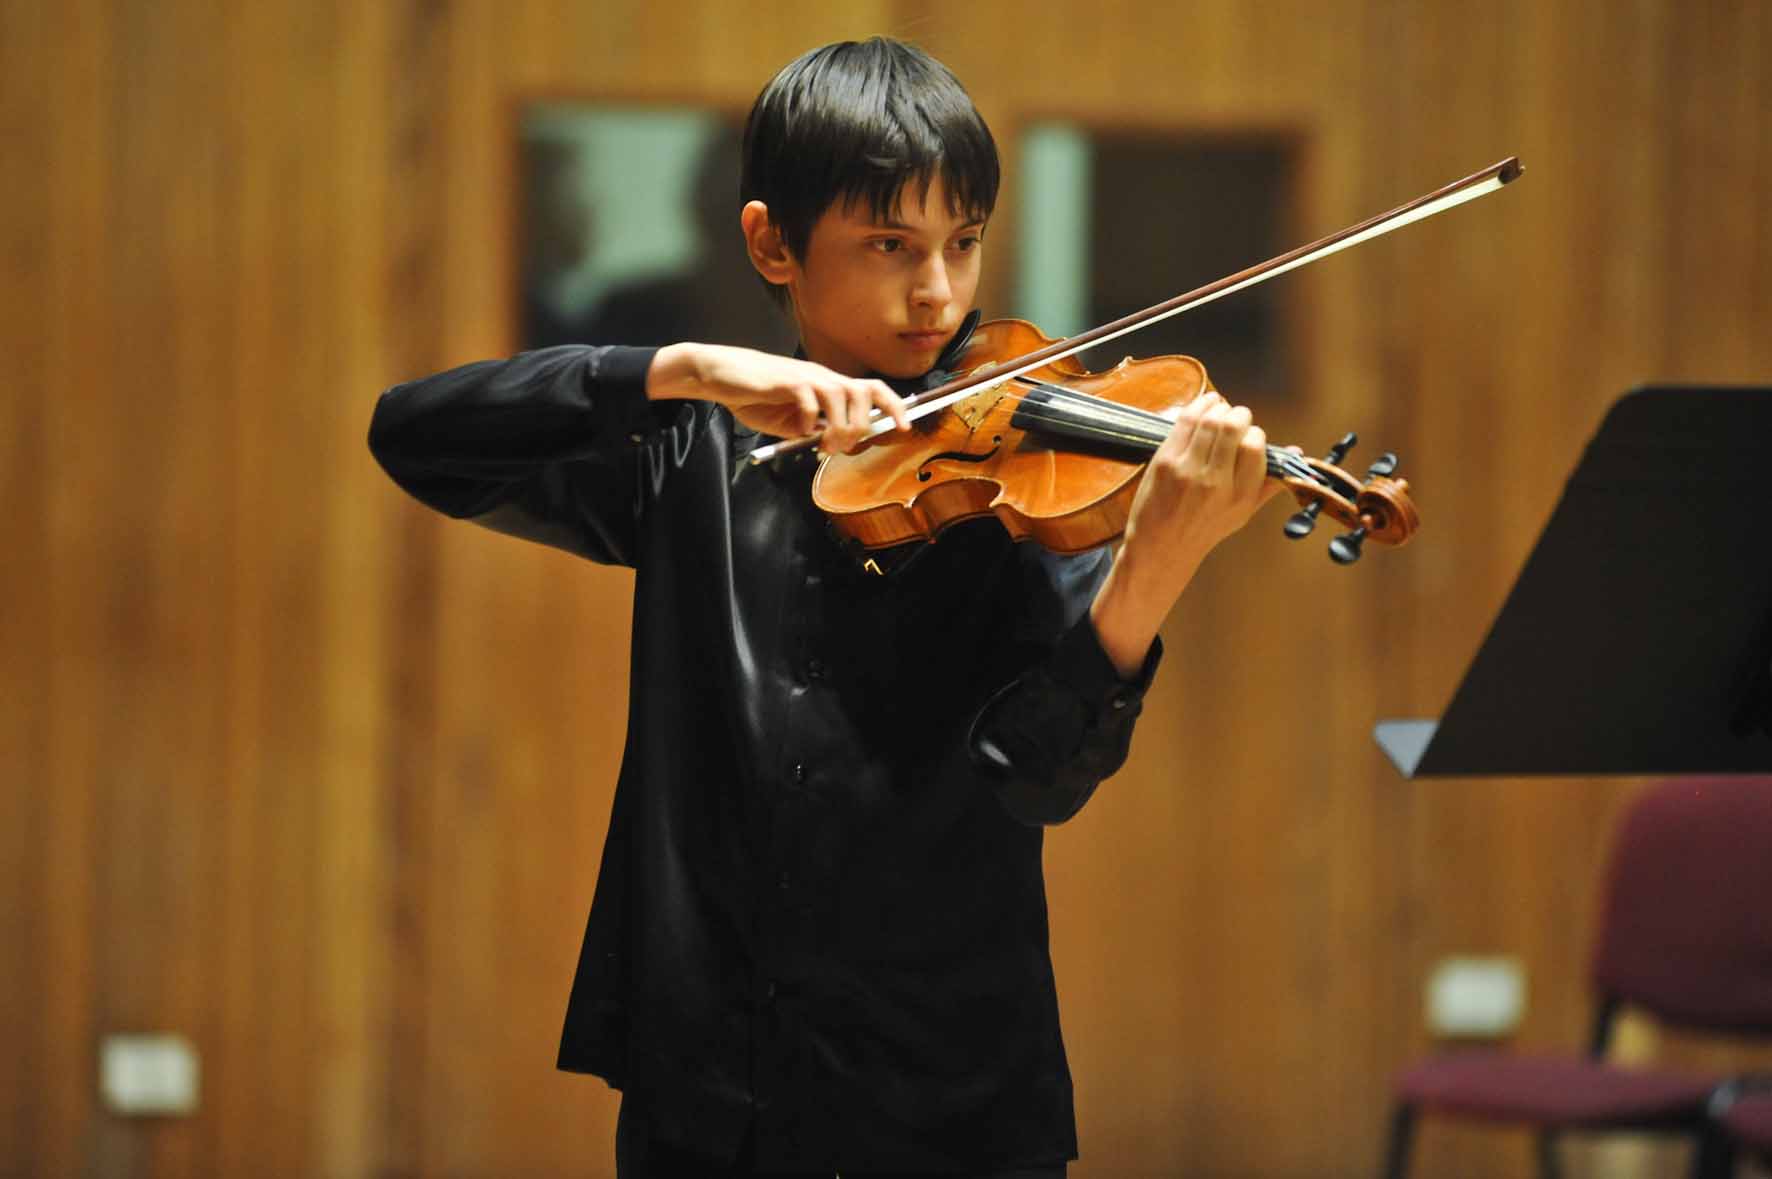 Child Prodigy Paolo Tagliamento solo violinist to entertain music ...